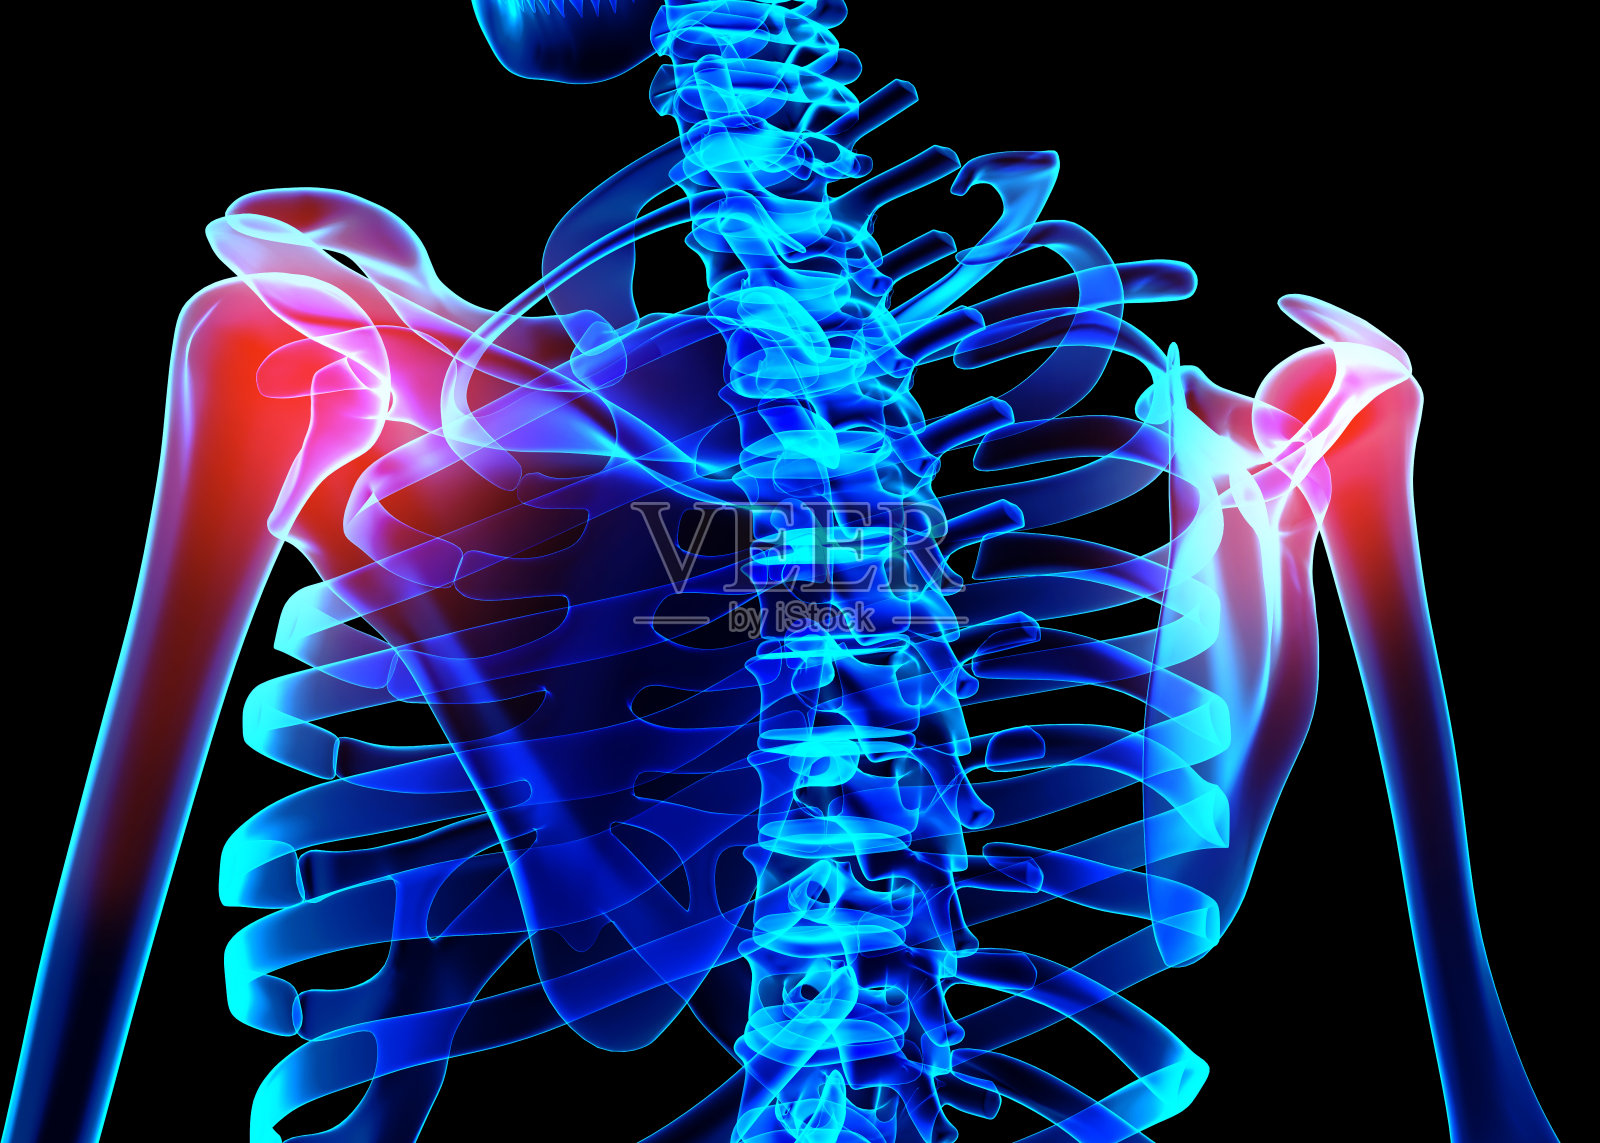 肩关节正常影像X线解剖 - 知乎